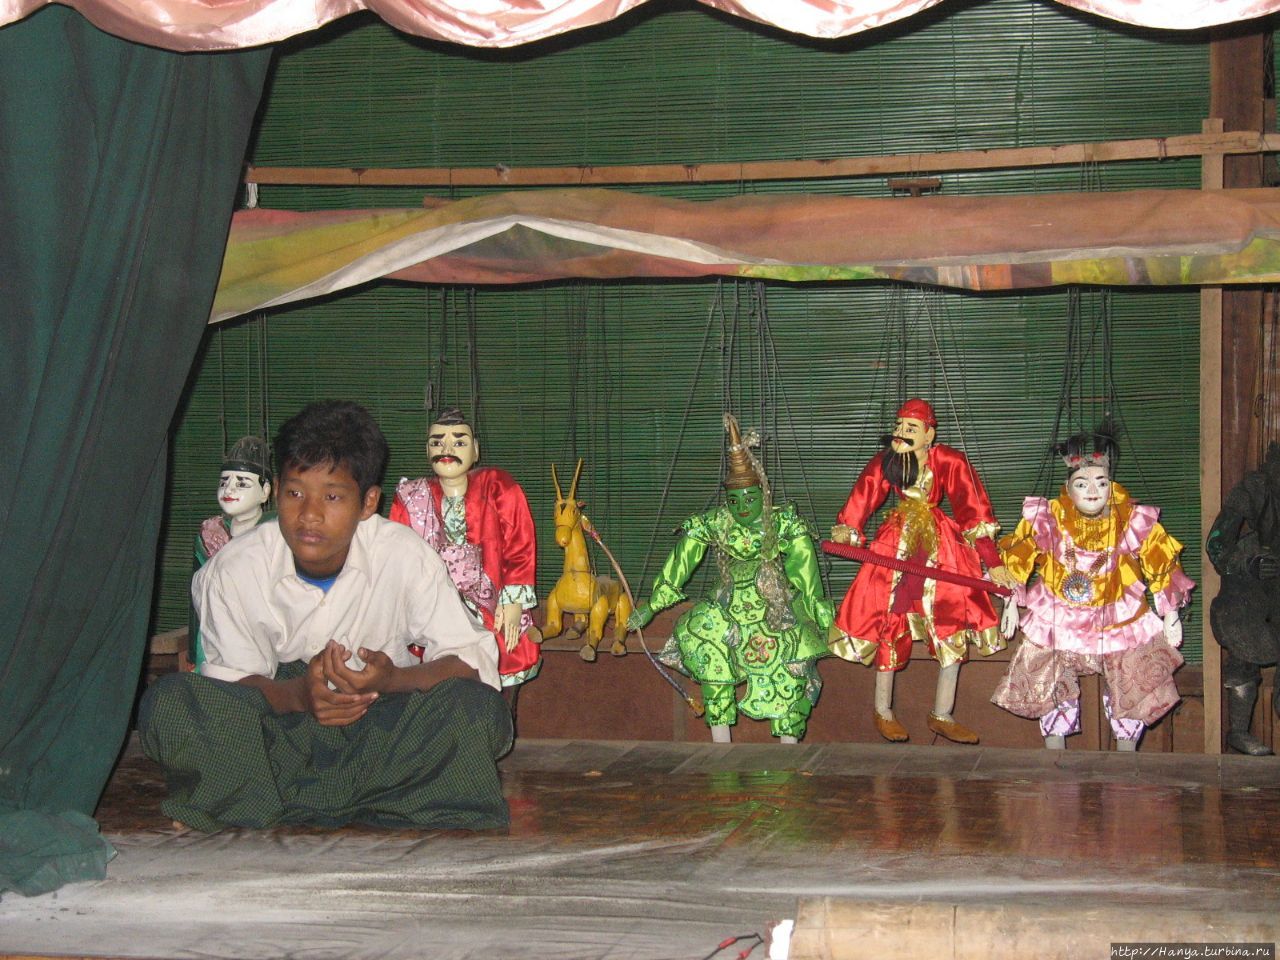 Маппет-шоу в Багане / Mappet show in Bagan